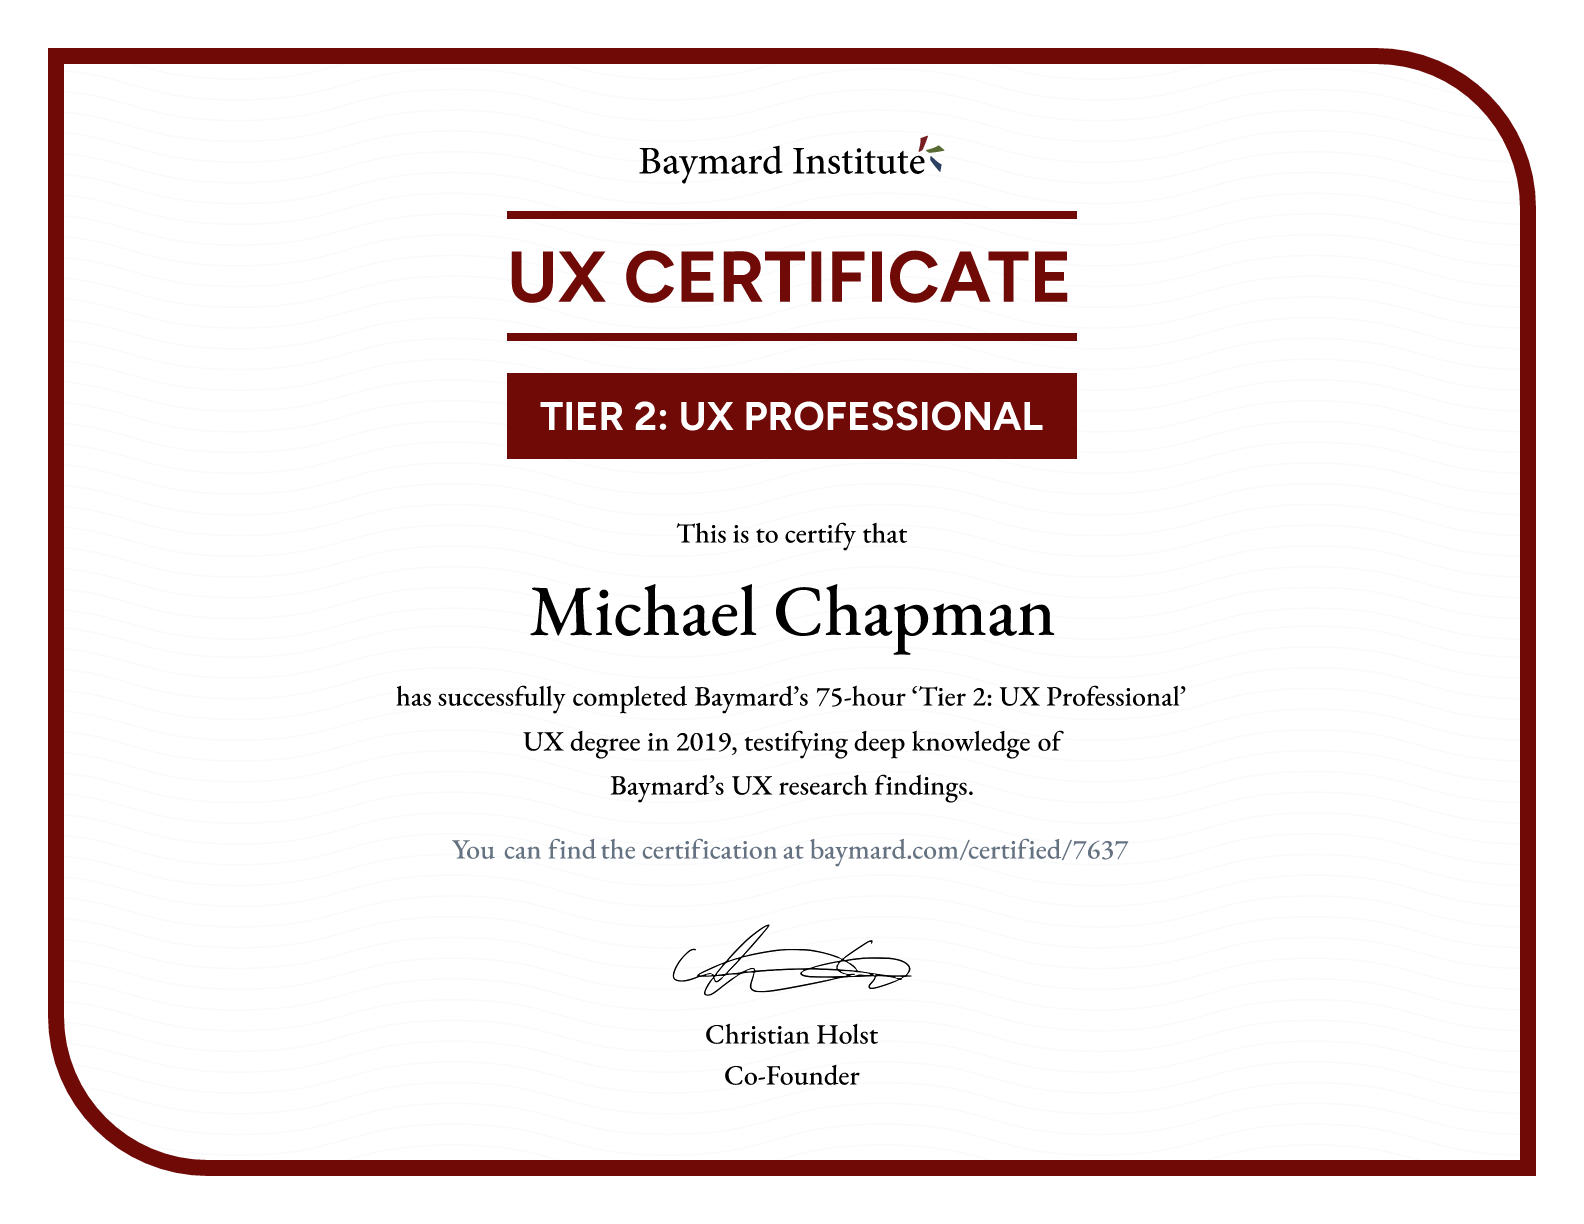 Michael Chapman’s certificate